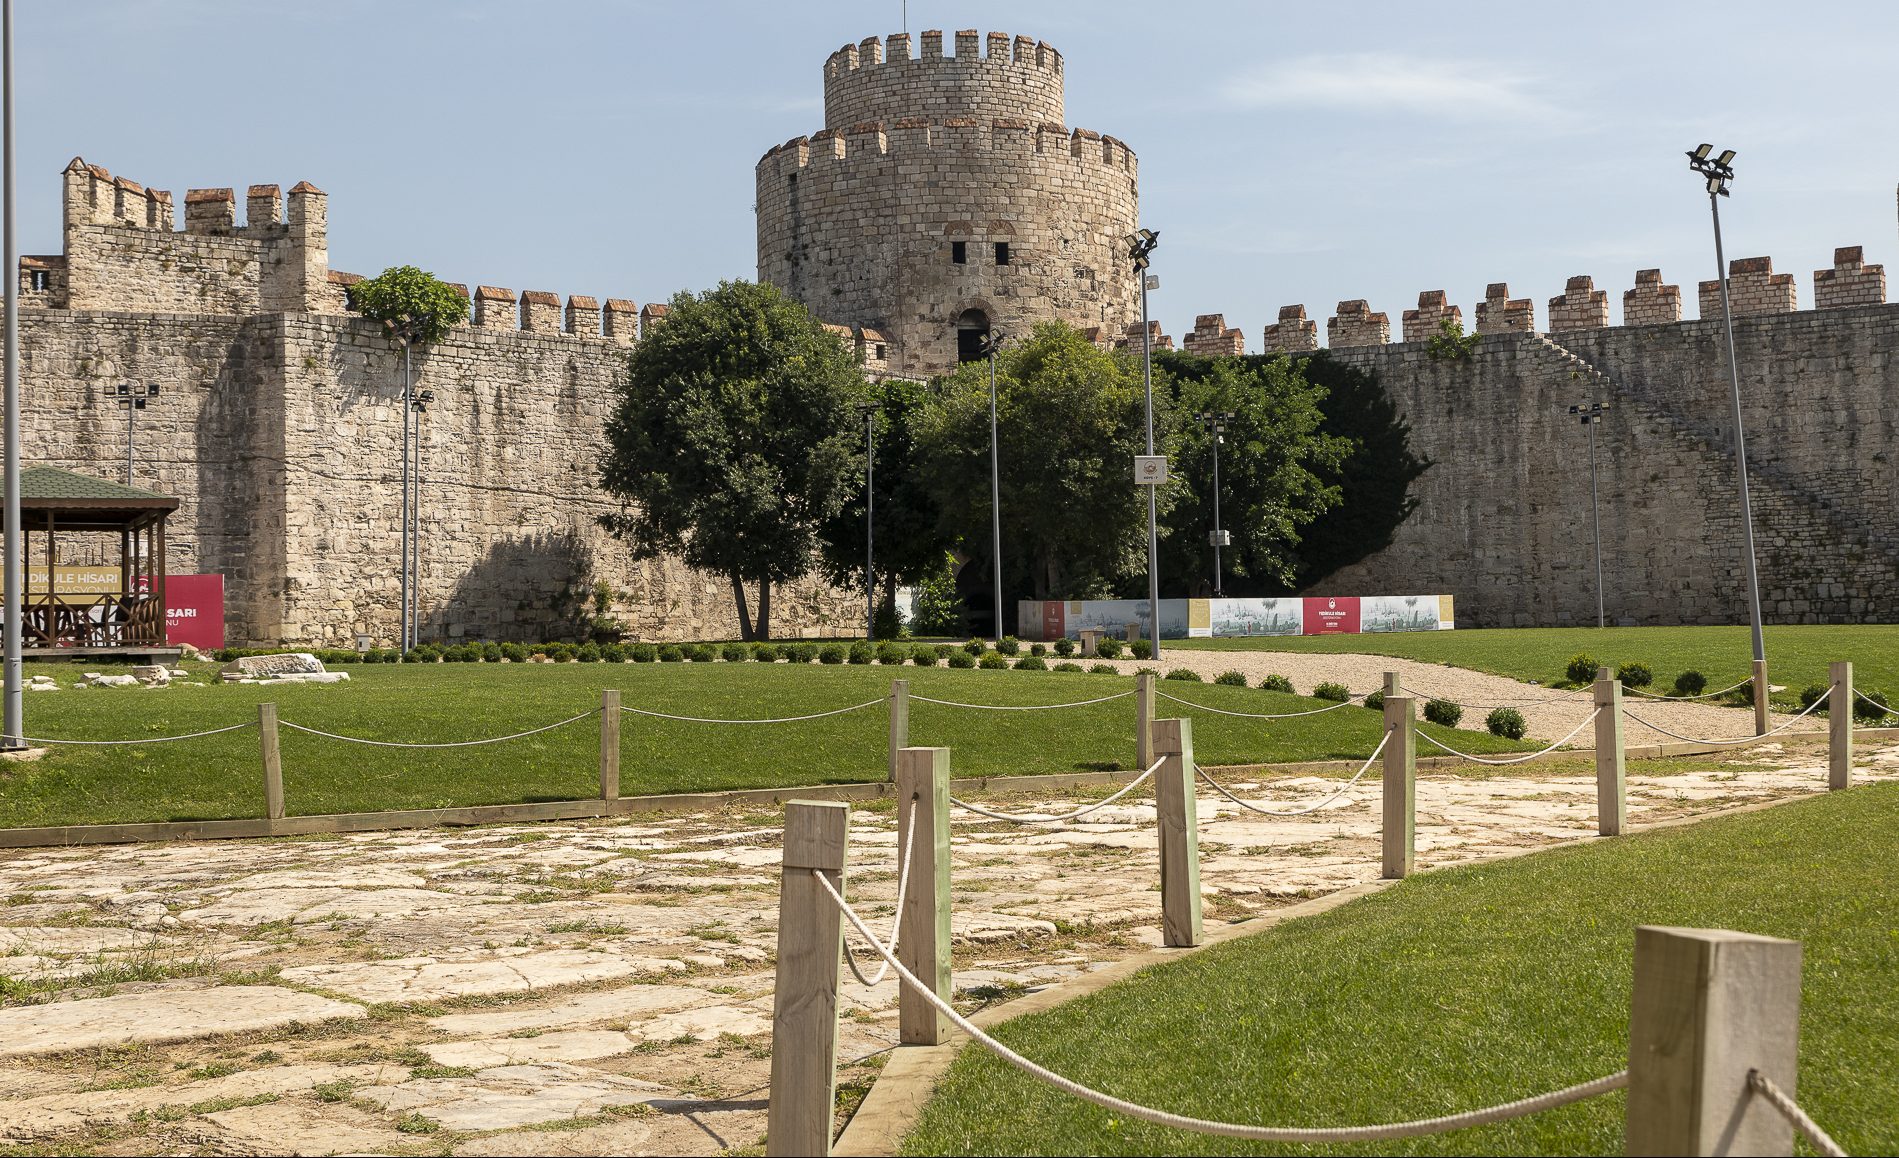 Le mura di Costantinopoli – Distretto di Fatih – Istanbul